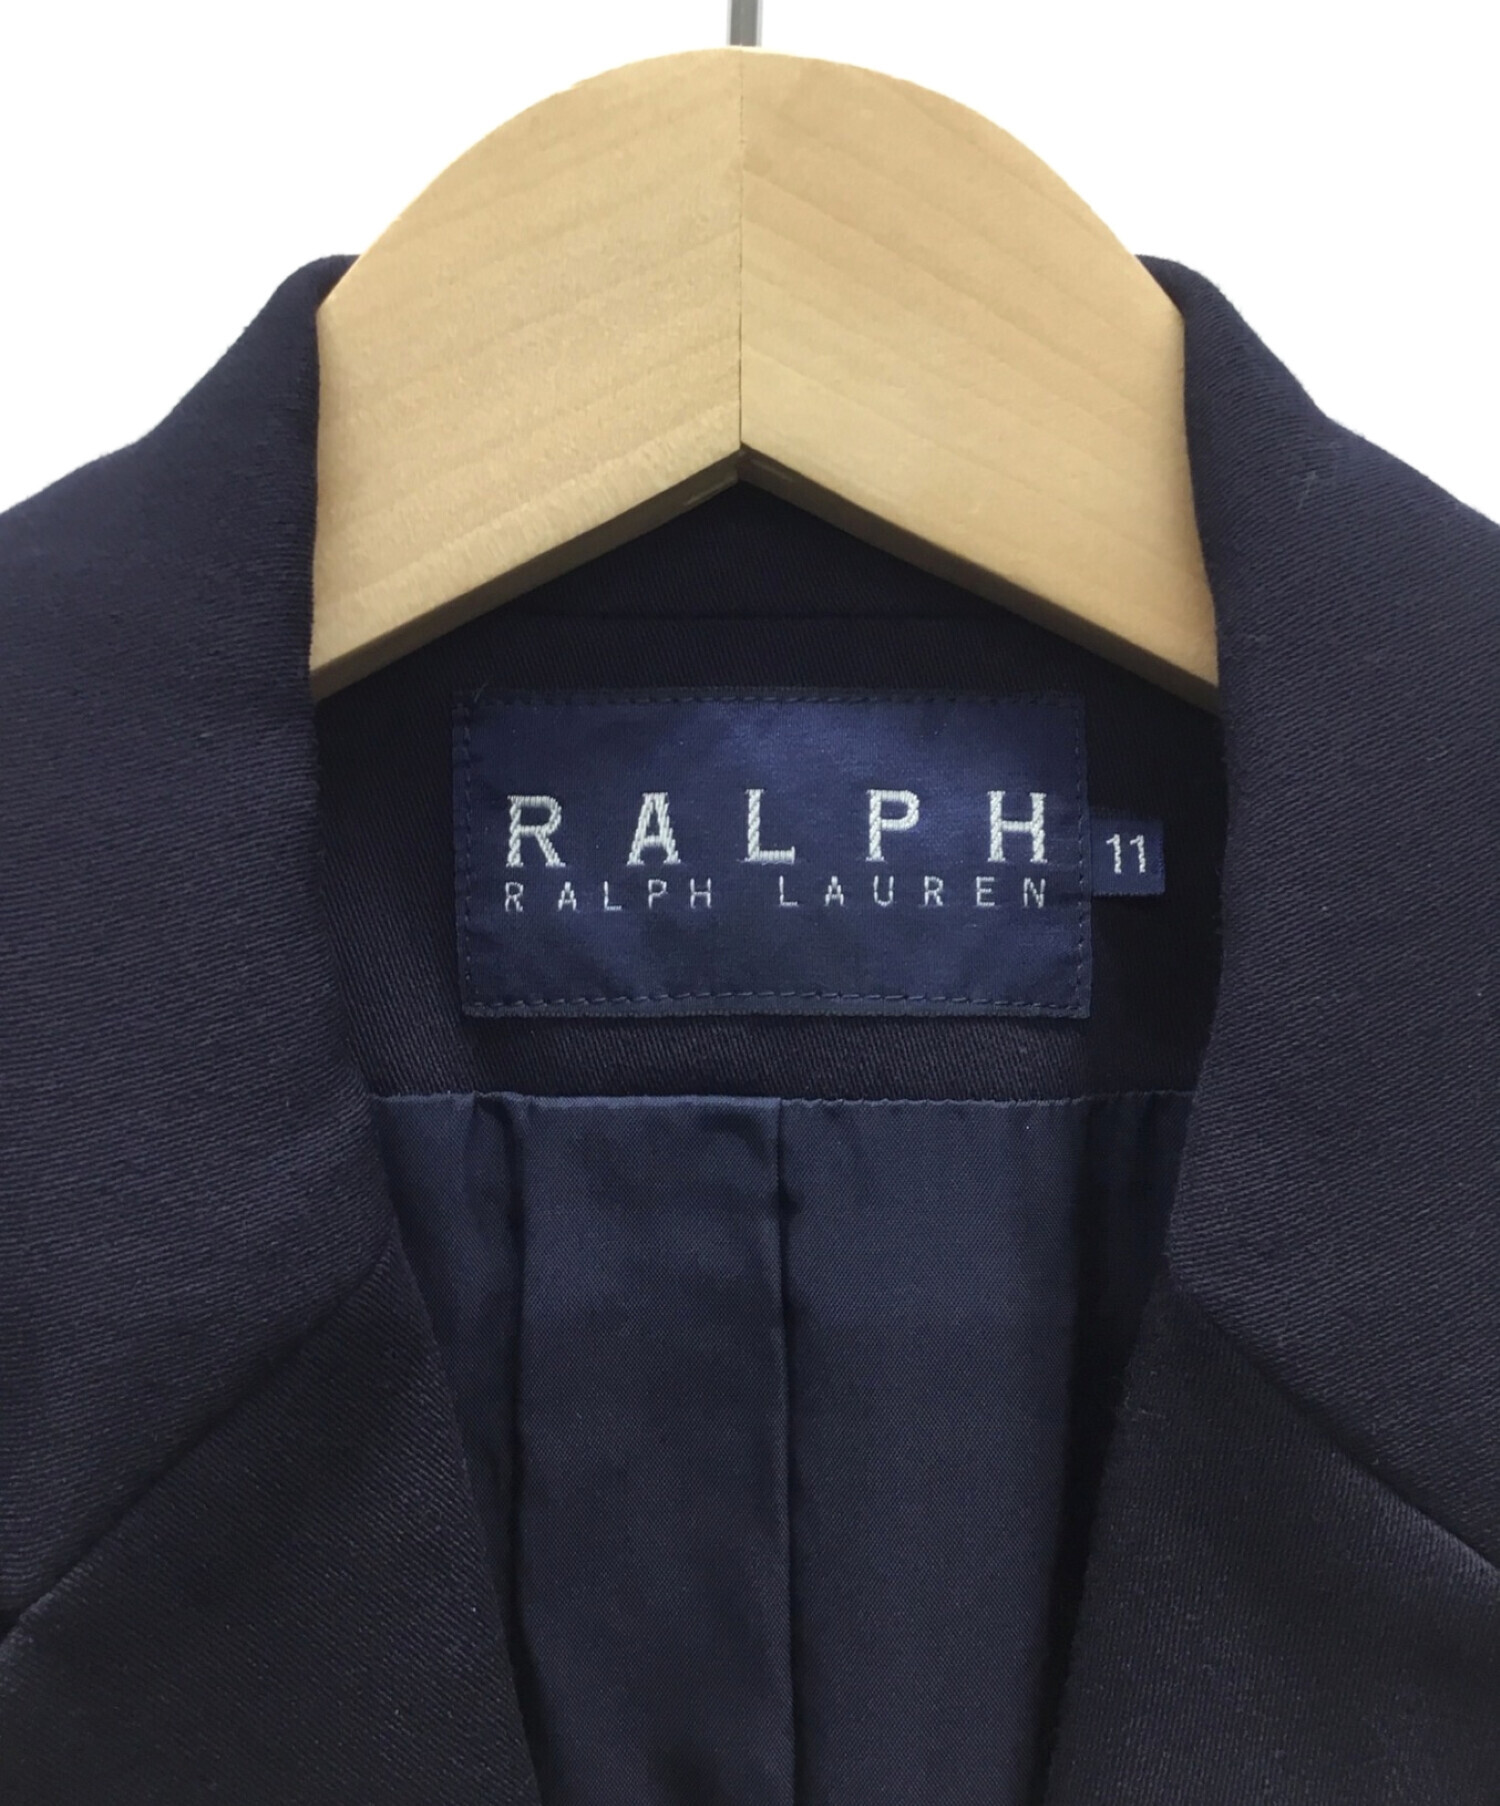 RALPH LAUREN (ラルフローレン) セットアップスーツ ネイビー サイズ:11